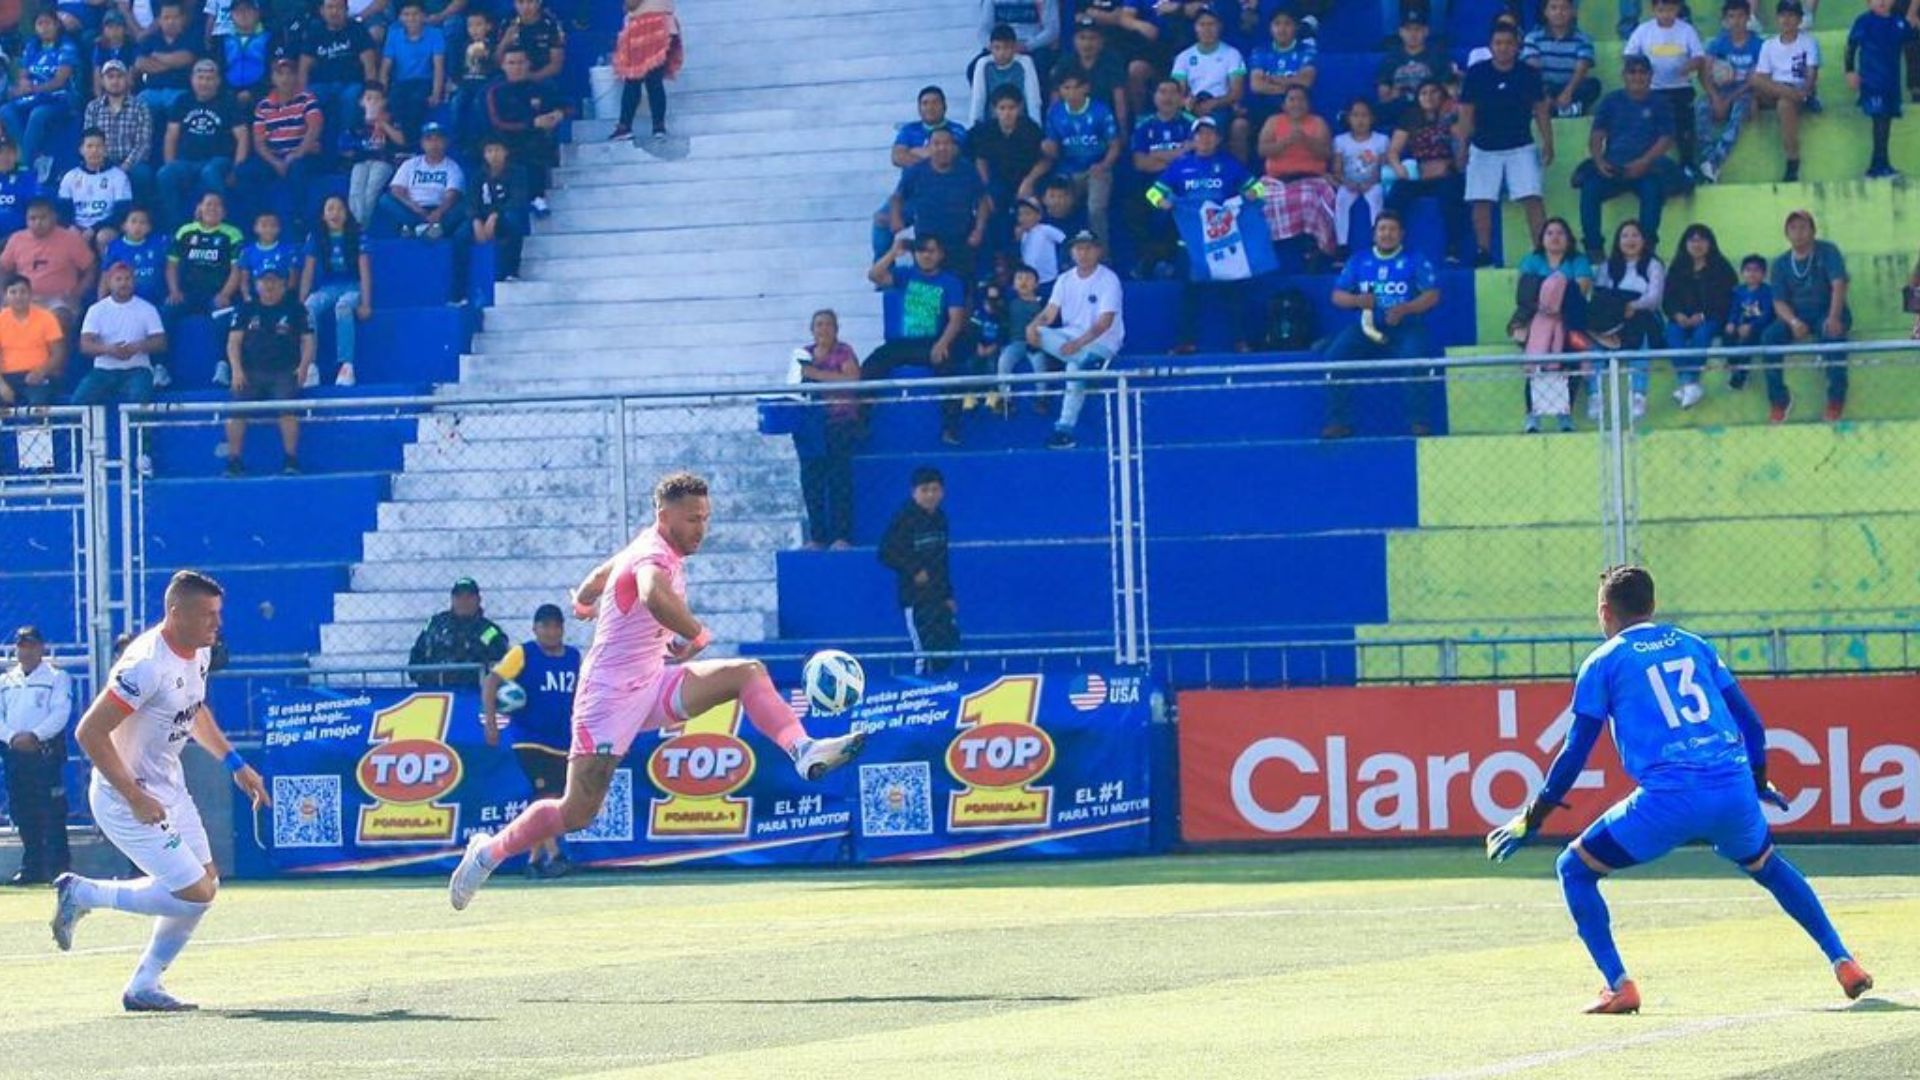 Este fue el momento en el que el jugador de Mixco, Roque Caballero, marcó el único gol del partido ante Achuapa en el Estadio Santo Domingo. (Foto Prensa Libre: @DeportivoMixco)